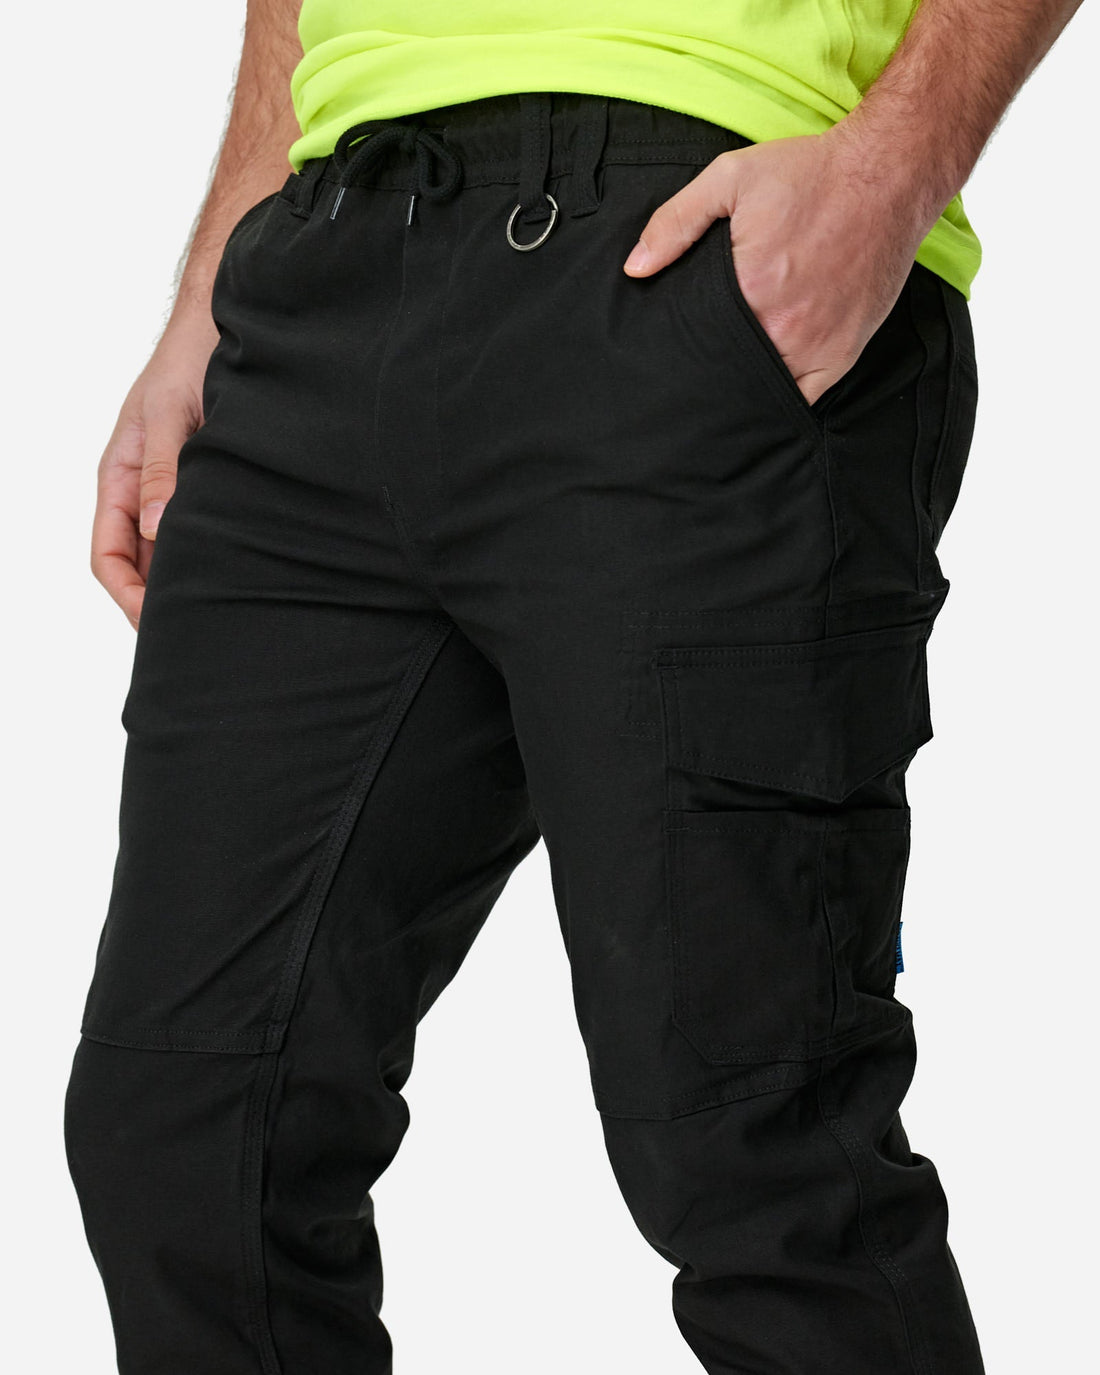 Elwood Men's Elastic Waist Cuffed Trouser - Coming soon - BIG Boots UK